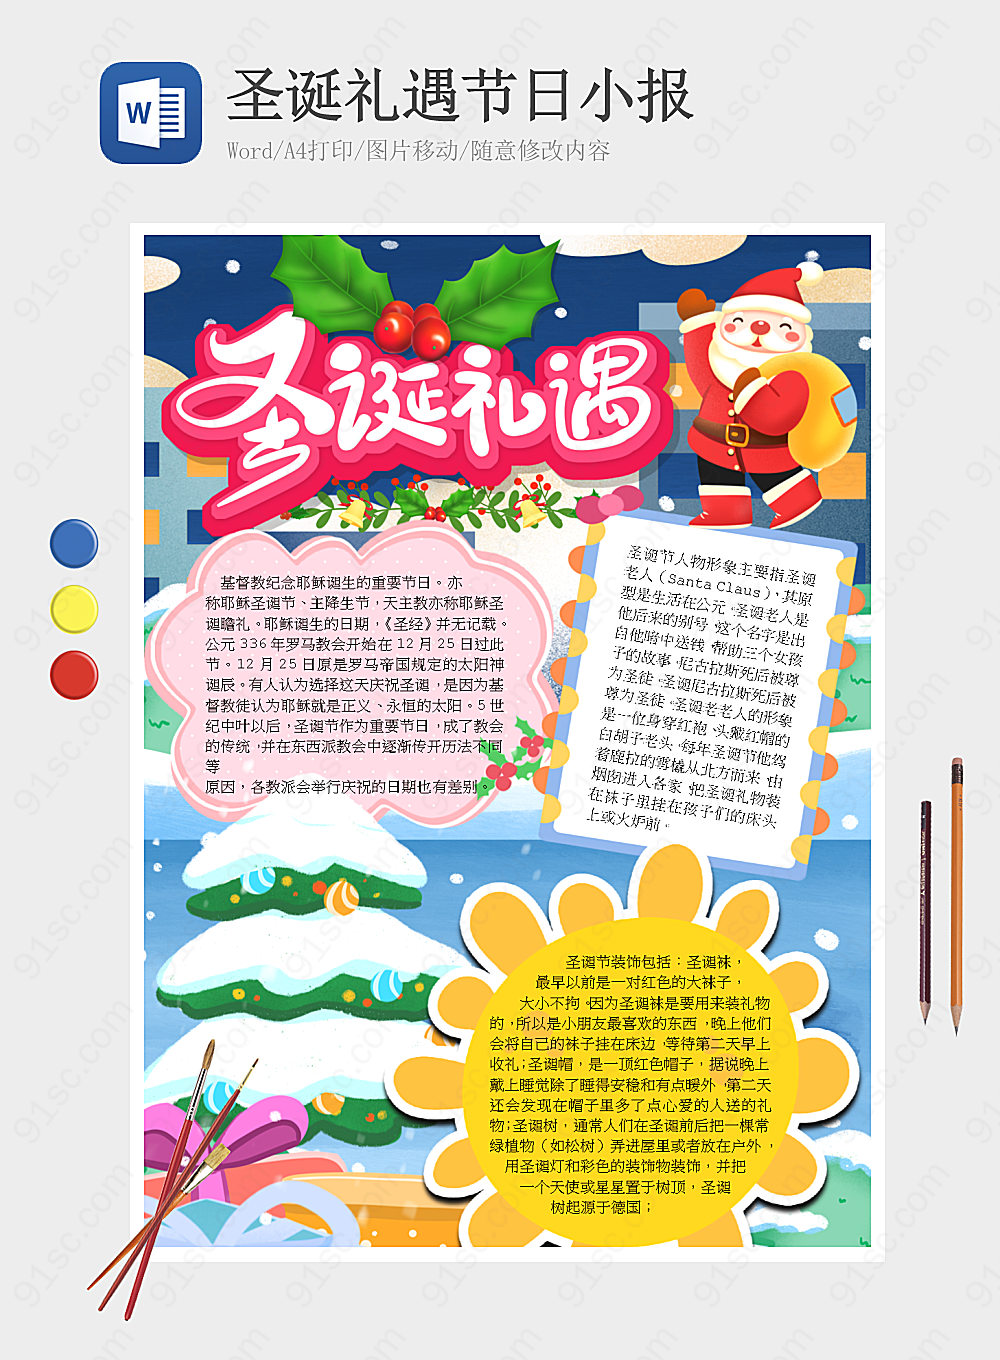 圣诞节庆祝活动概览节日手抄报小报海报Word模板下载